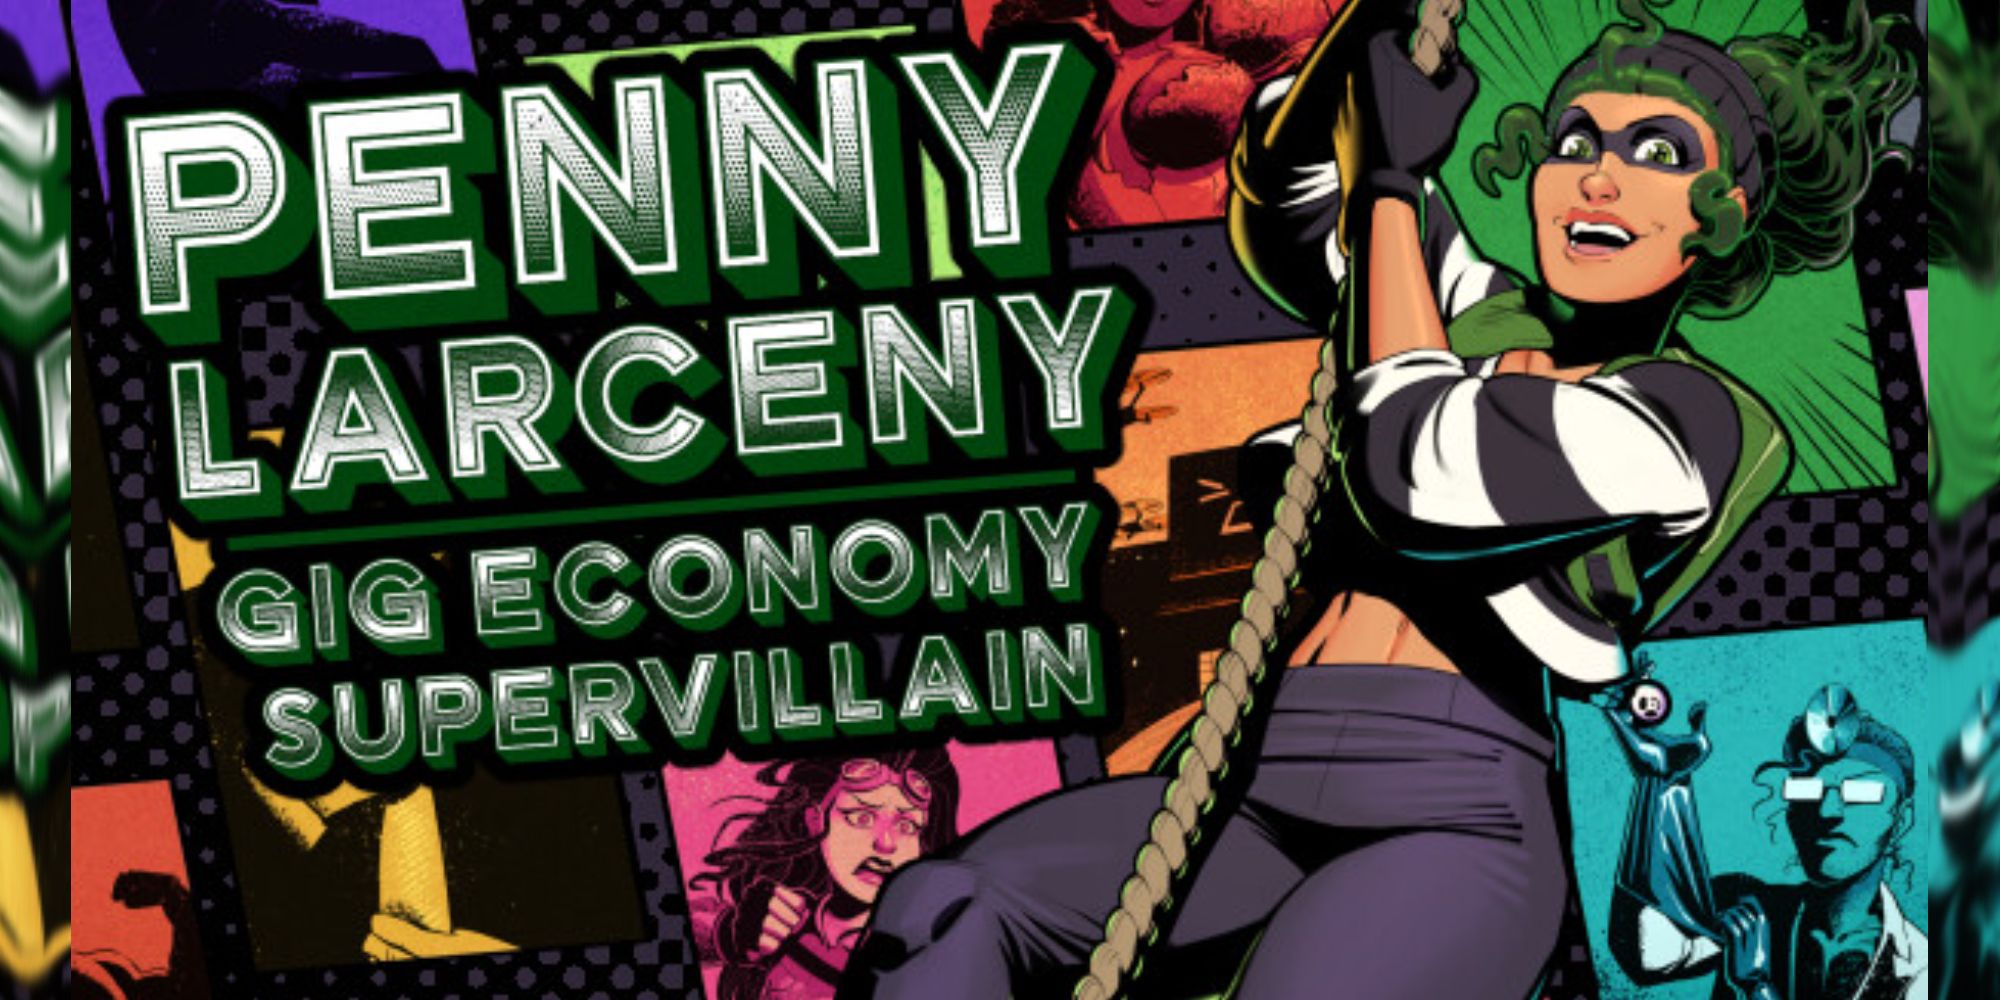 Penny Theft Concert Economy Supervillain opções aromáticas sem gênero interruptores estranhos